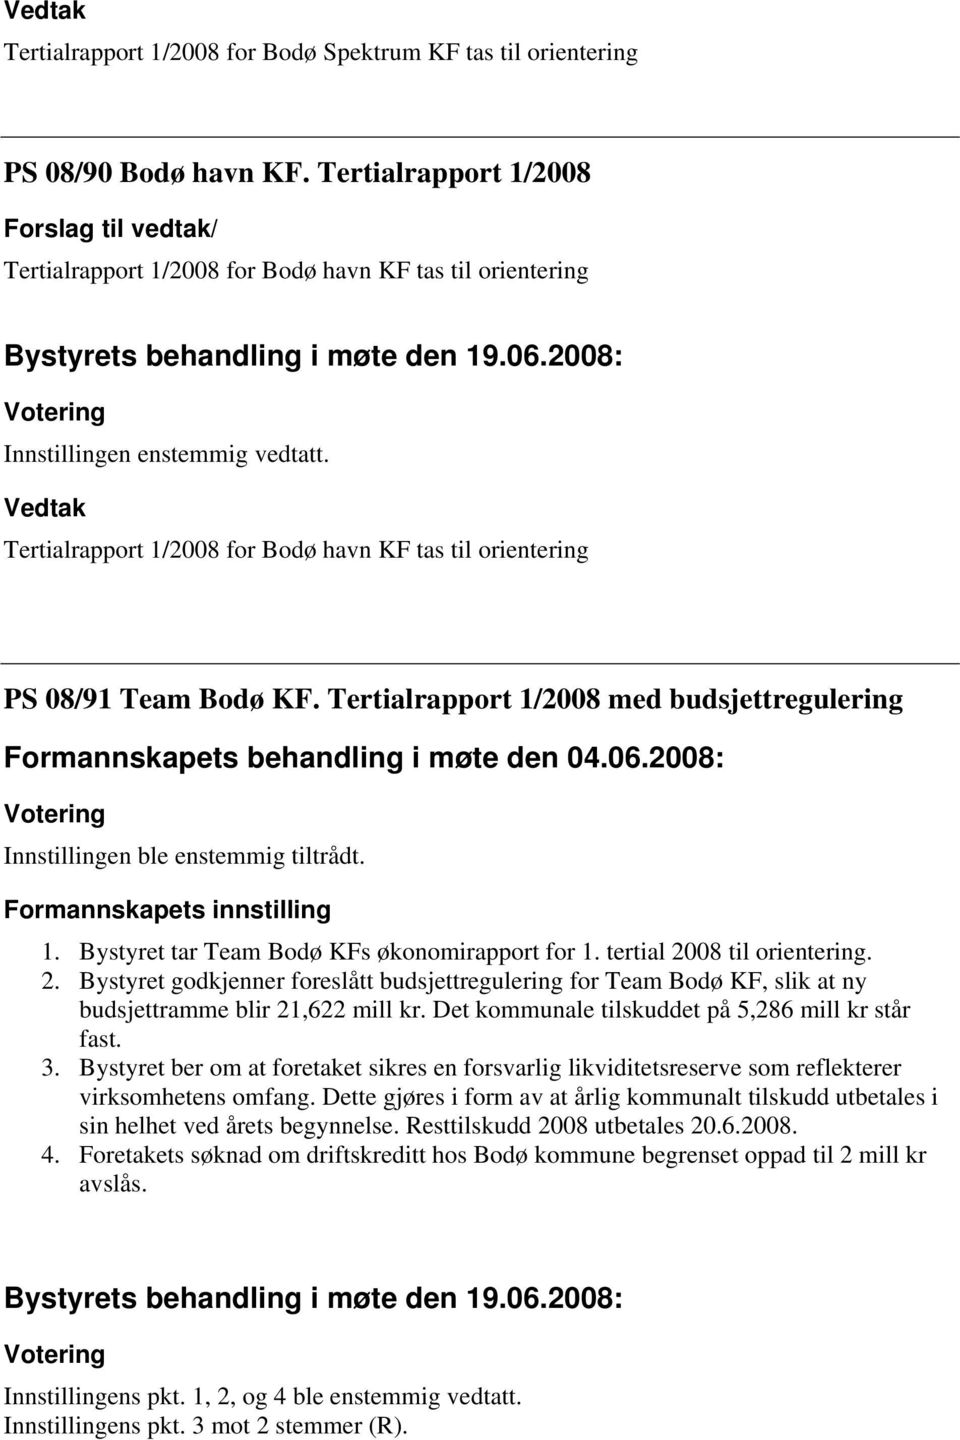 Vedtak Tertialrapport 1/2008 for Bodø havn KF tas til orientering PS 08/91 Team Bodø KF. Tertialrapport 1/2008 med budsjettregulering Formannskapets behandling i møte den 04.06.